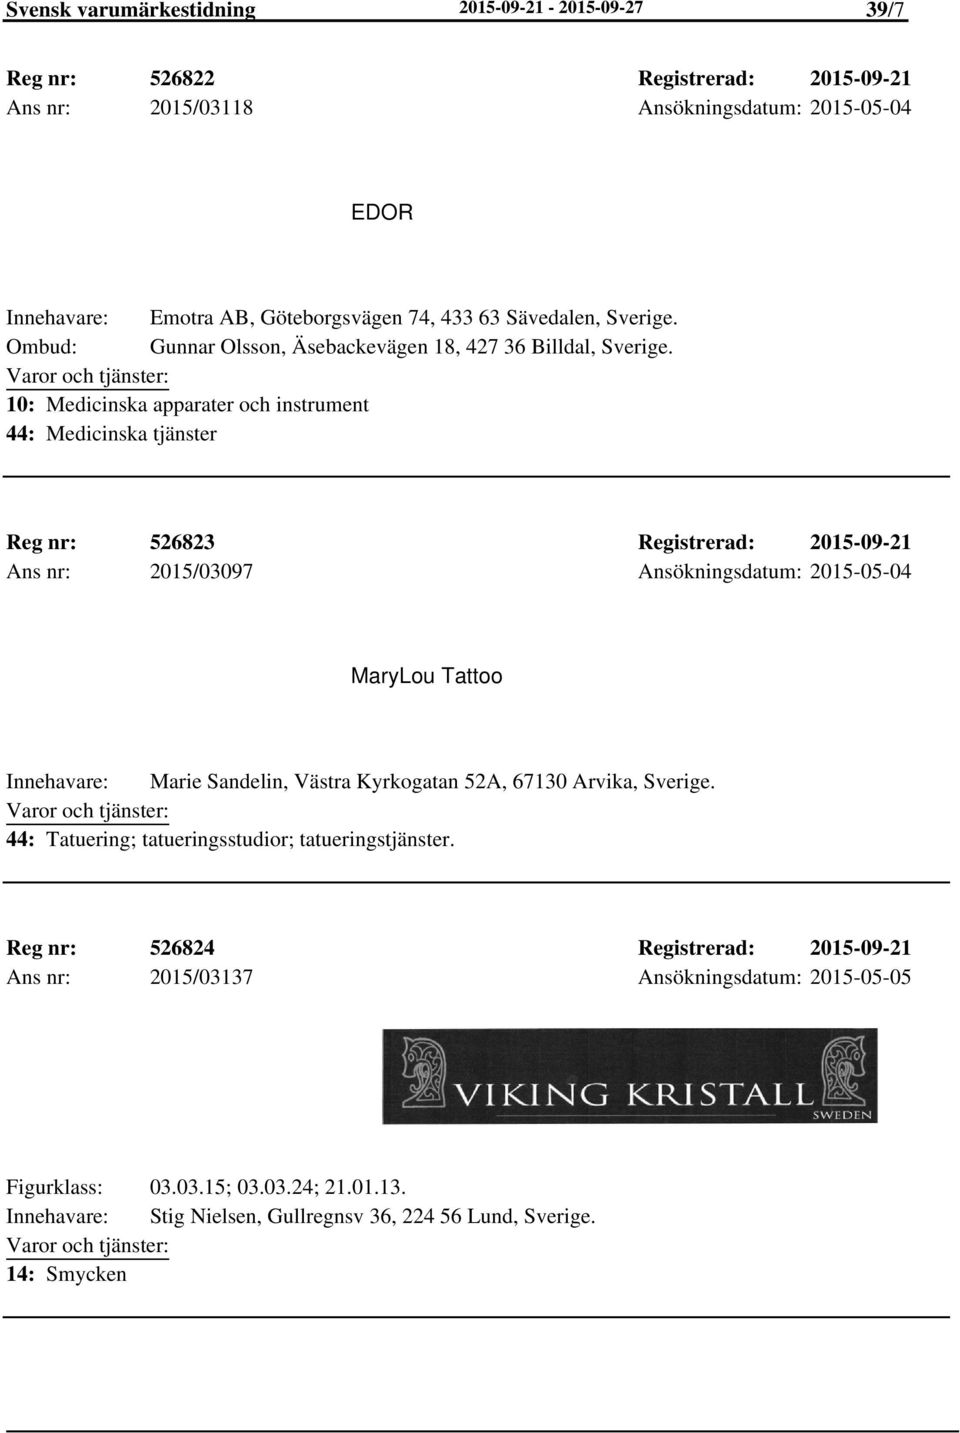 2015-09-21 Ans nr: 2015/03097 Ansökningsdatum: 2015-05-04 MaryLou Tattoo Marie Sandelin, Västra Kyrkogatan 52A, 67130 Arvika, 44: Tatuering; tatueringsstudior;